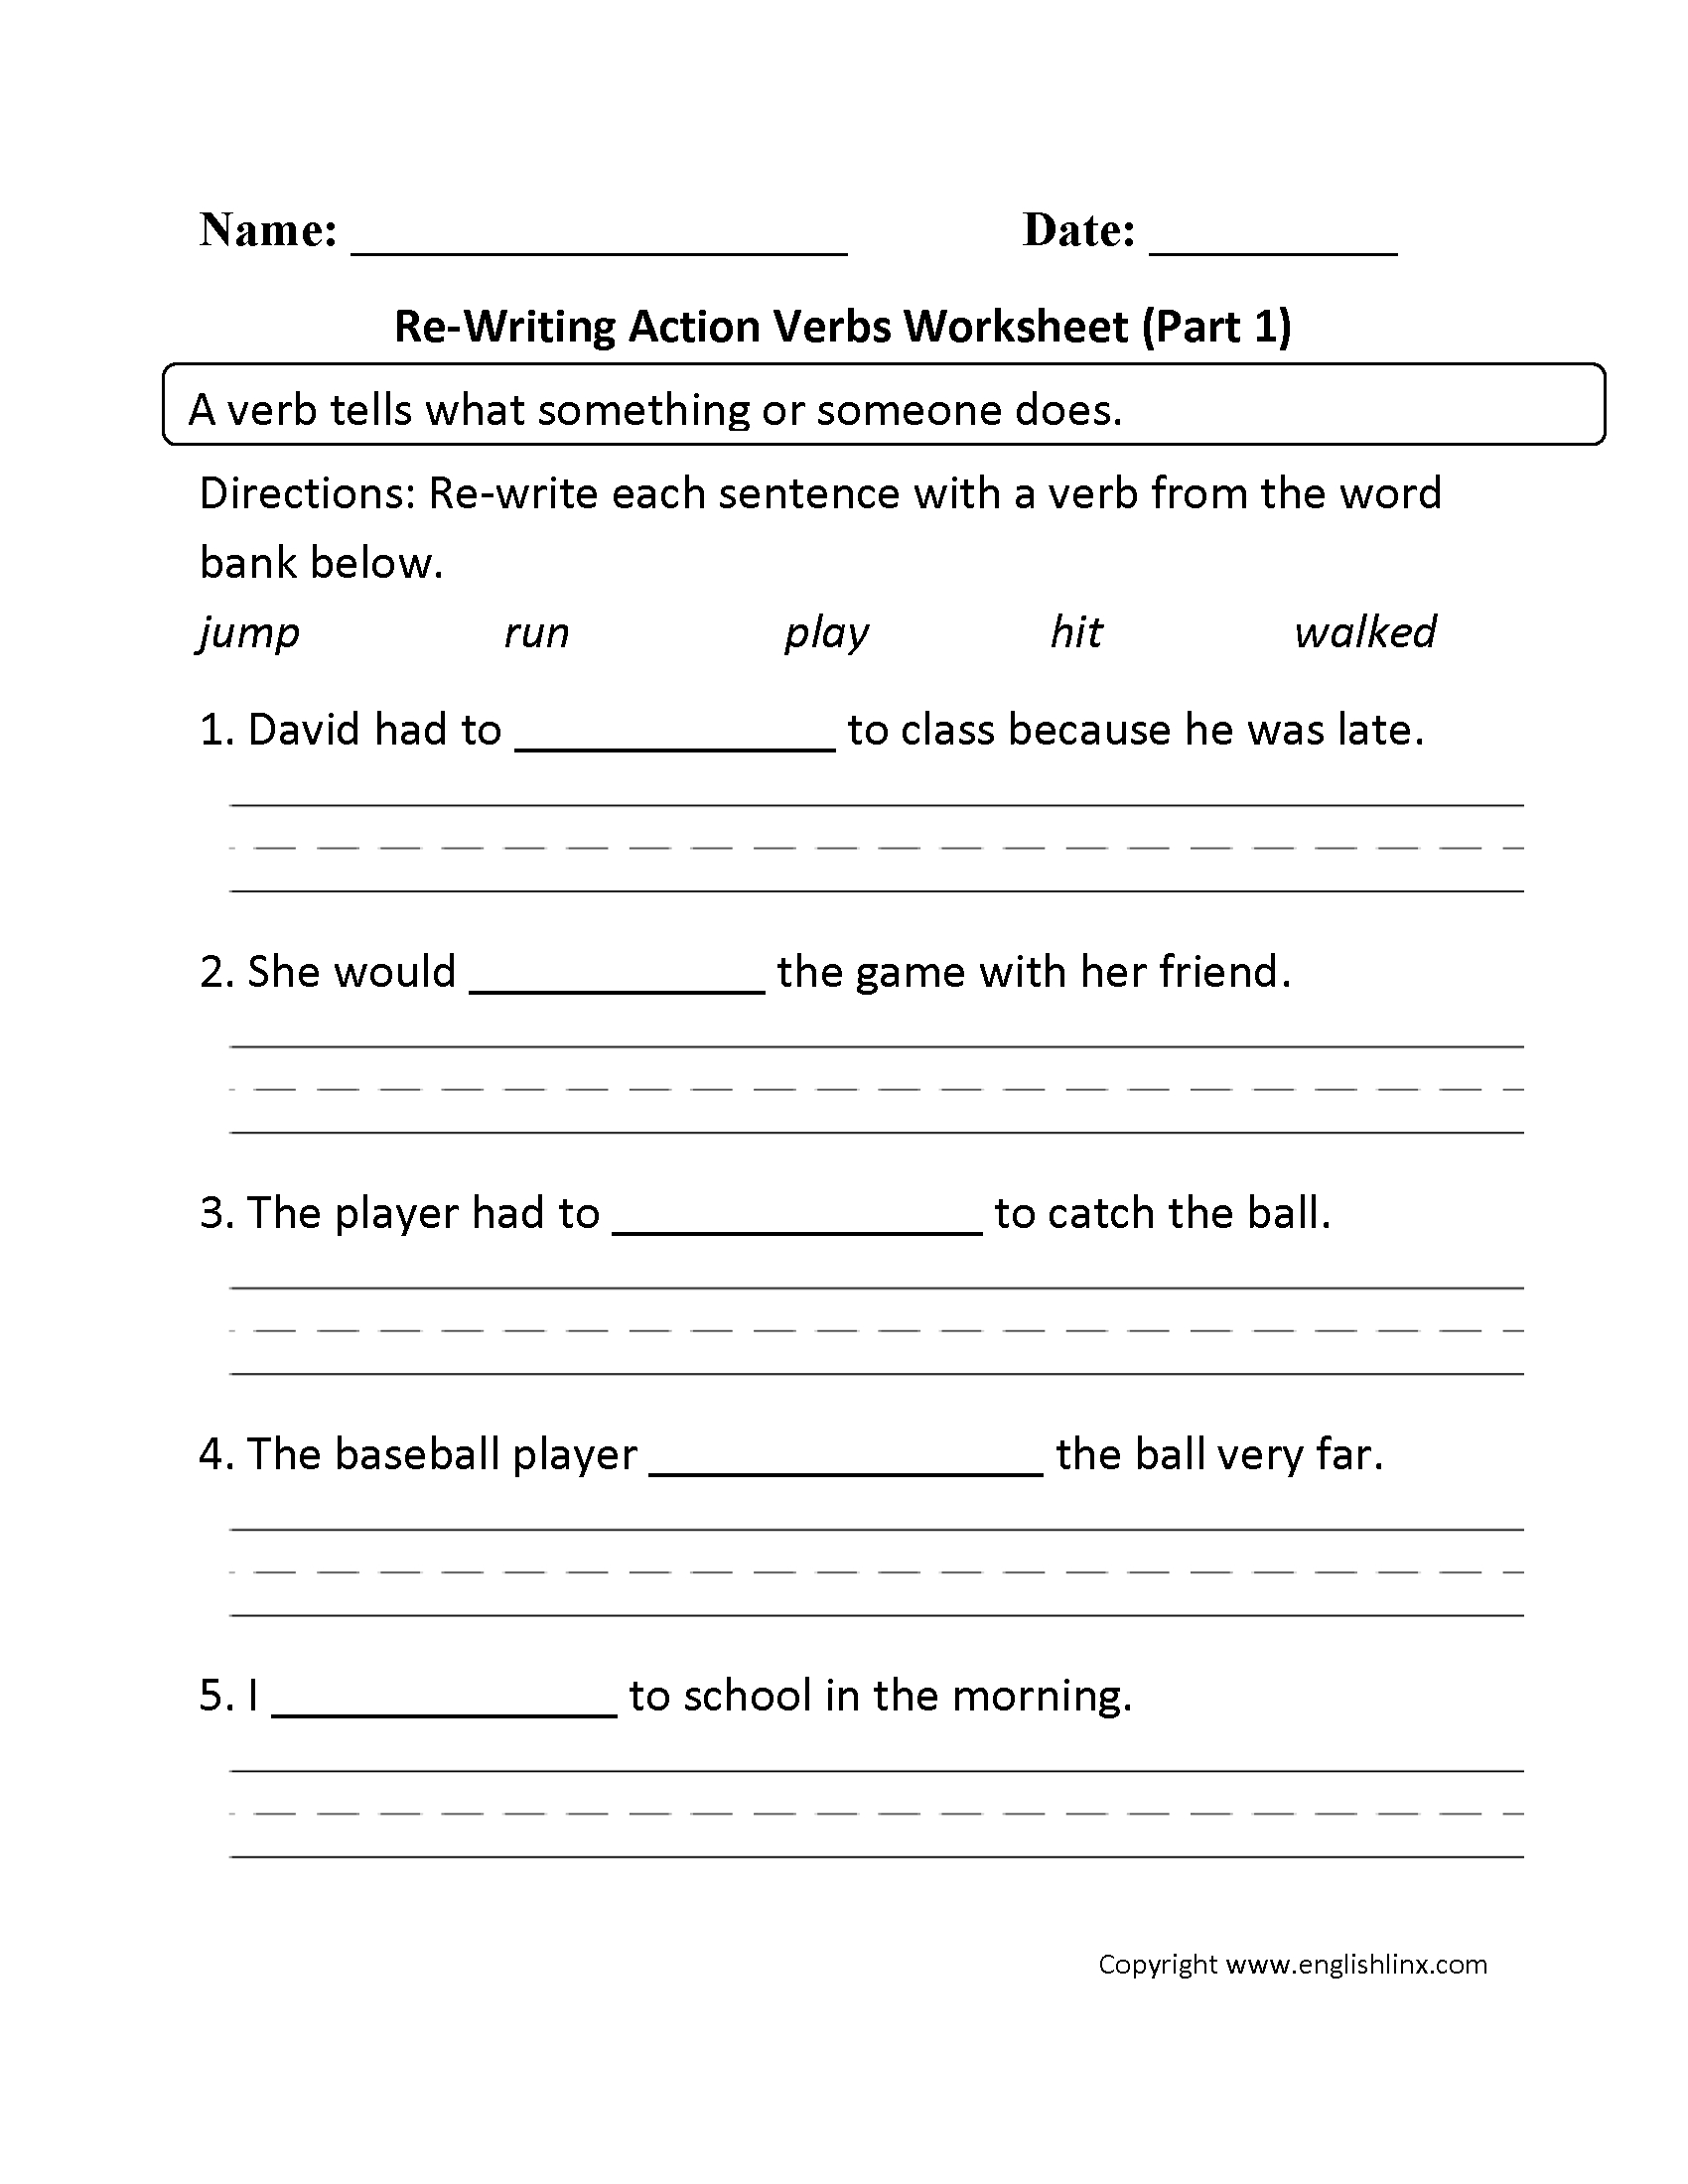 verbs-worksheets-action-verbs-worksheets-db-excel